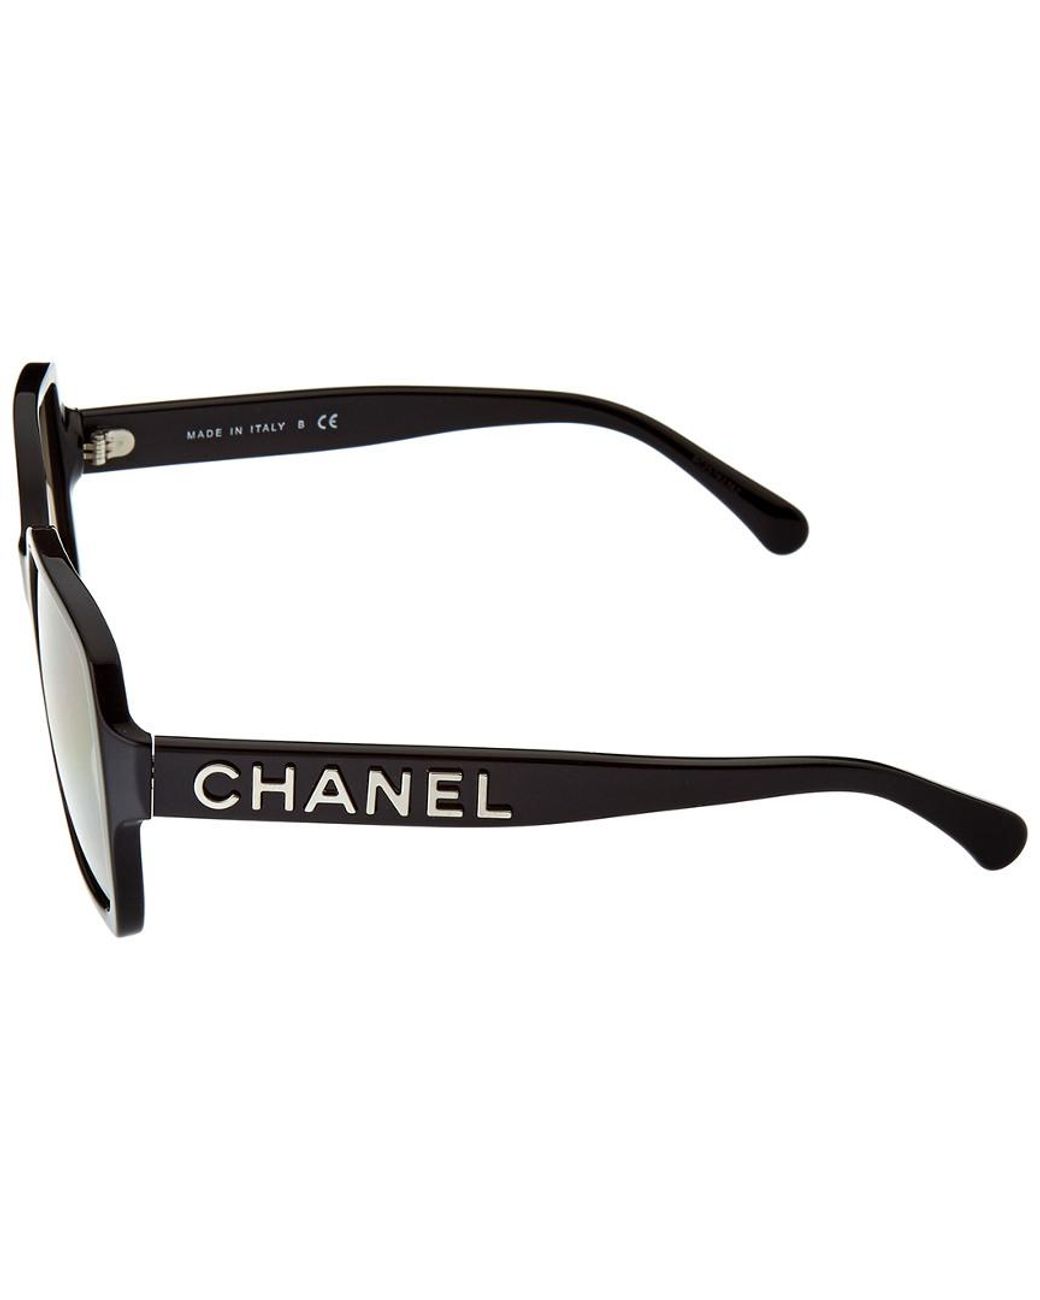 Buy CAXMAN Fit Over Glasses Sunglasses for Men & Women Polarized